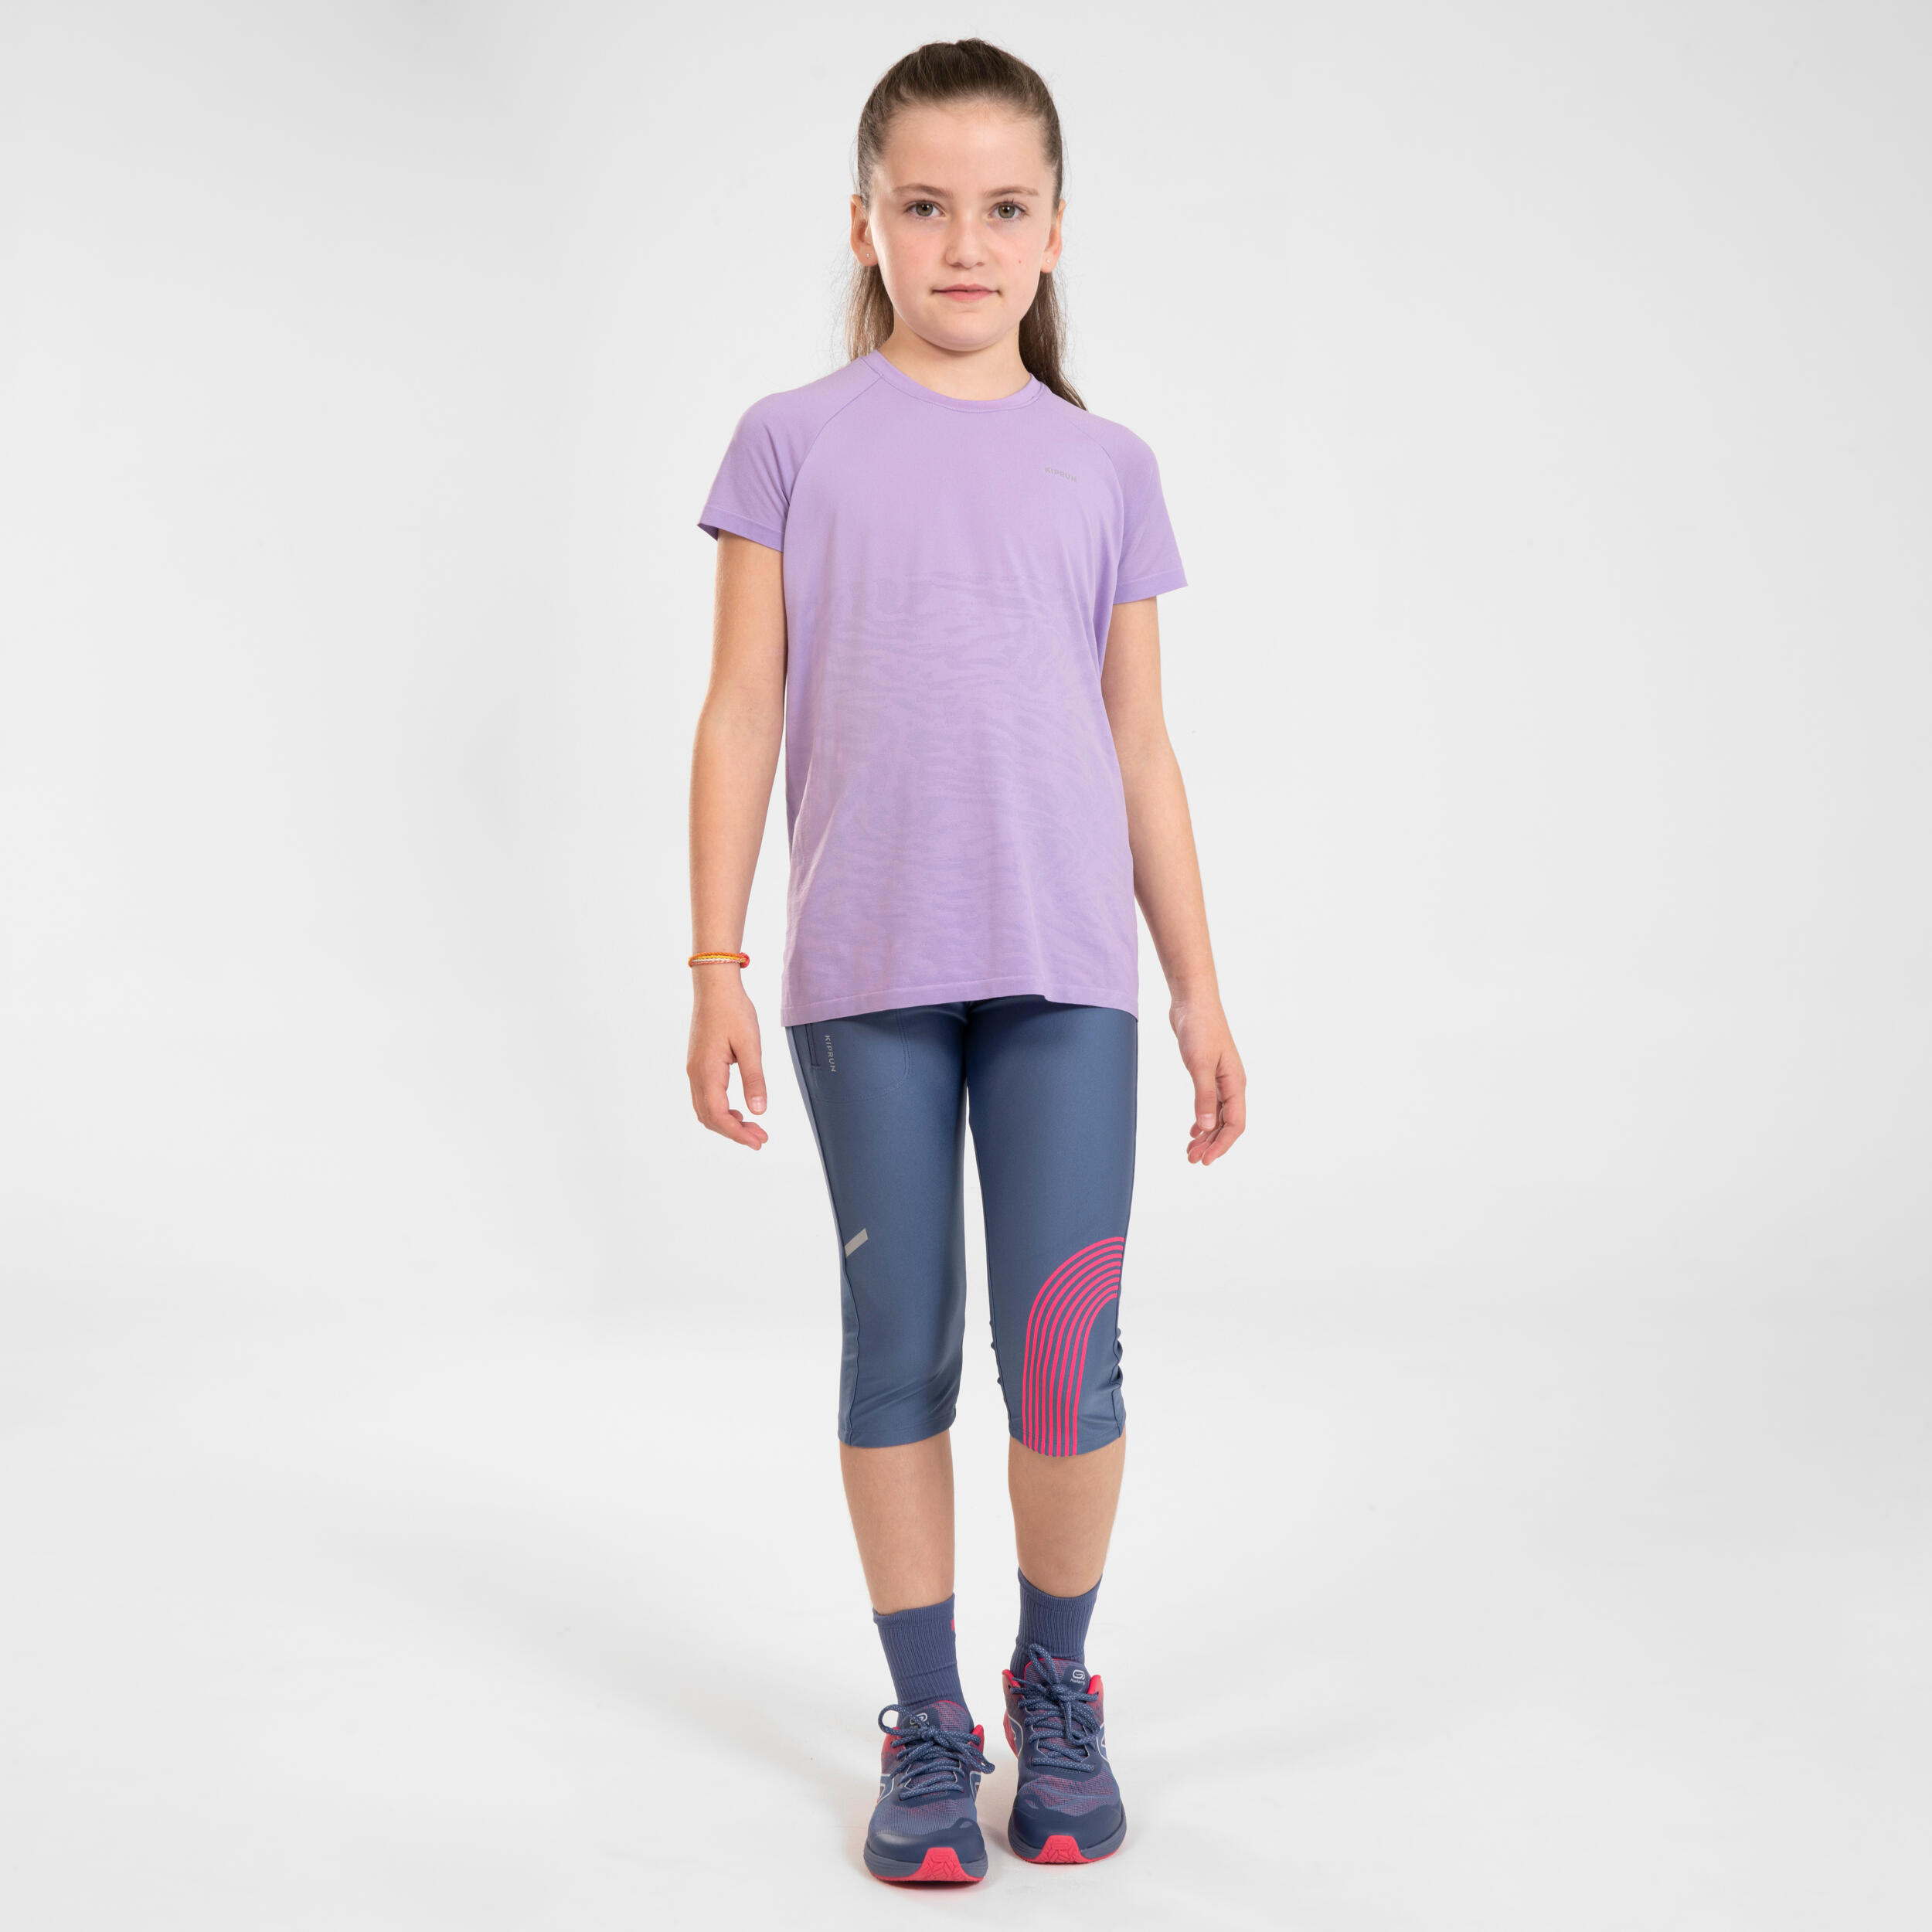 Kids' running leggings - KIPRUN DRY - grey pink 11/14